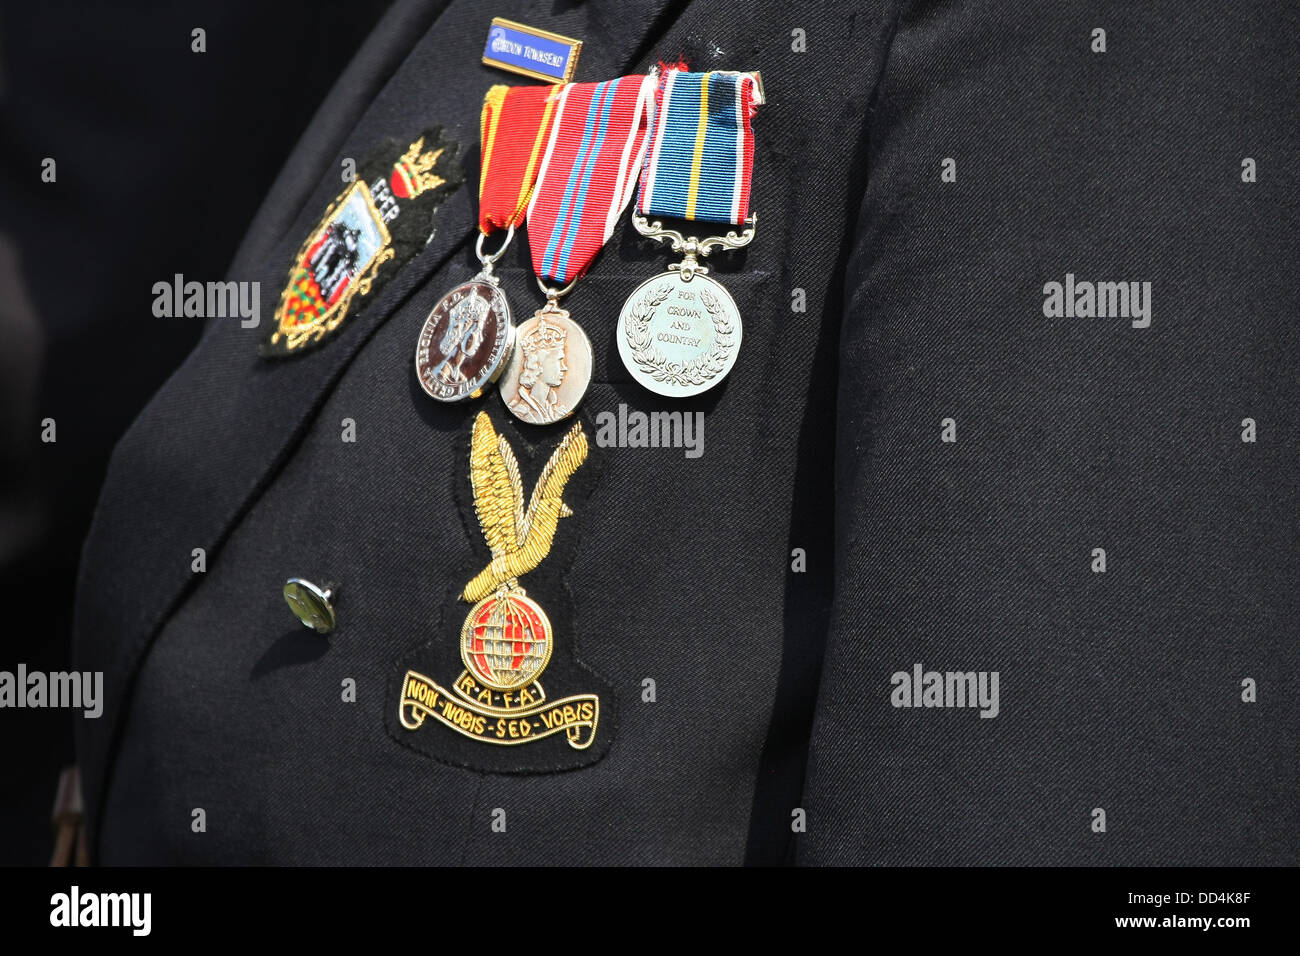 25. August 2013, wenig Gransden, Cambs, UK - eine stolze Anzeige der "Veteran" Medaillen bei den kleinen GRANSDEN Airshow Kredit: Motofoto/Alamy Live News Stockfoto